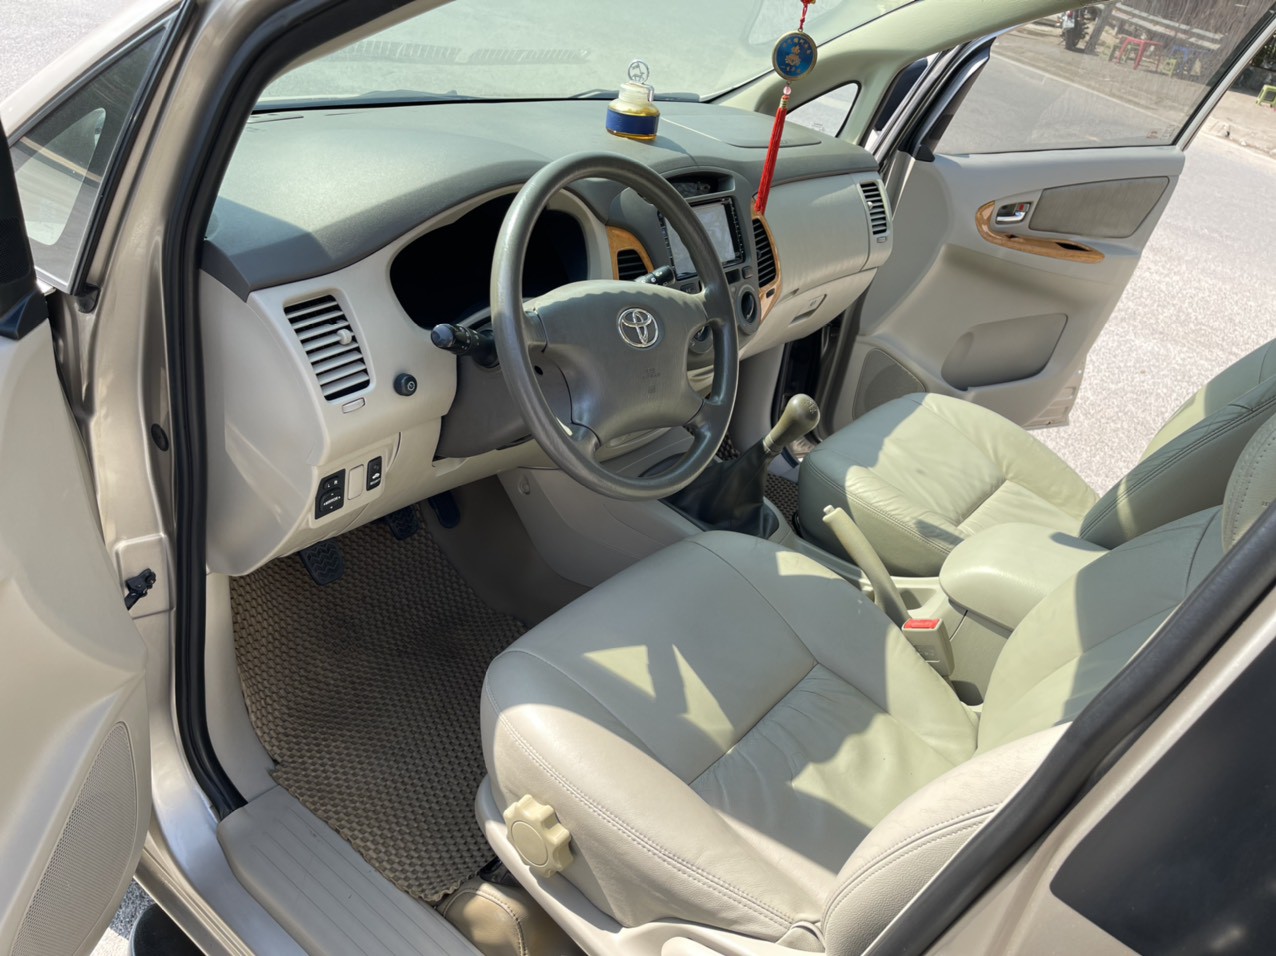 Cần bán lại xe Toyota Innova 2.0G SR 2010, 306tr